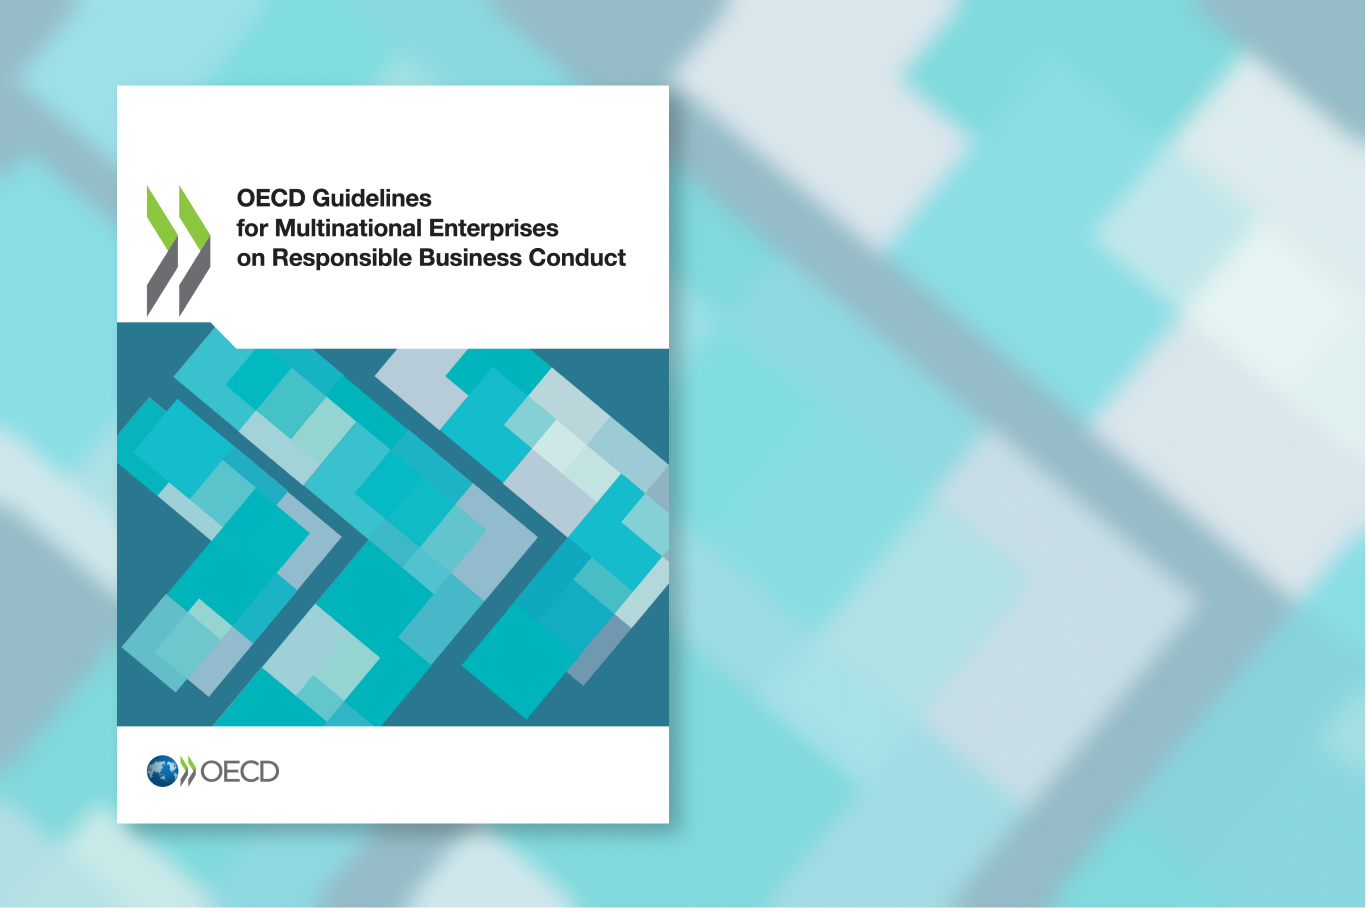 Forsiden av rapporten "OECD Guidelines for Multinational Enterprises on Responsible Business Conduct"